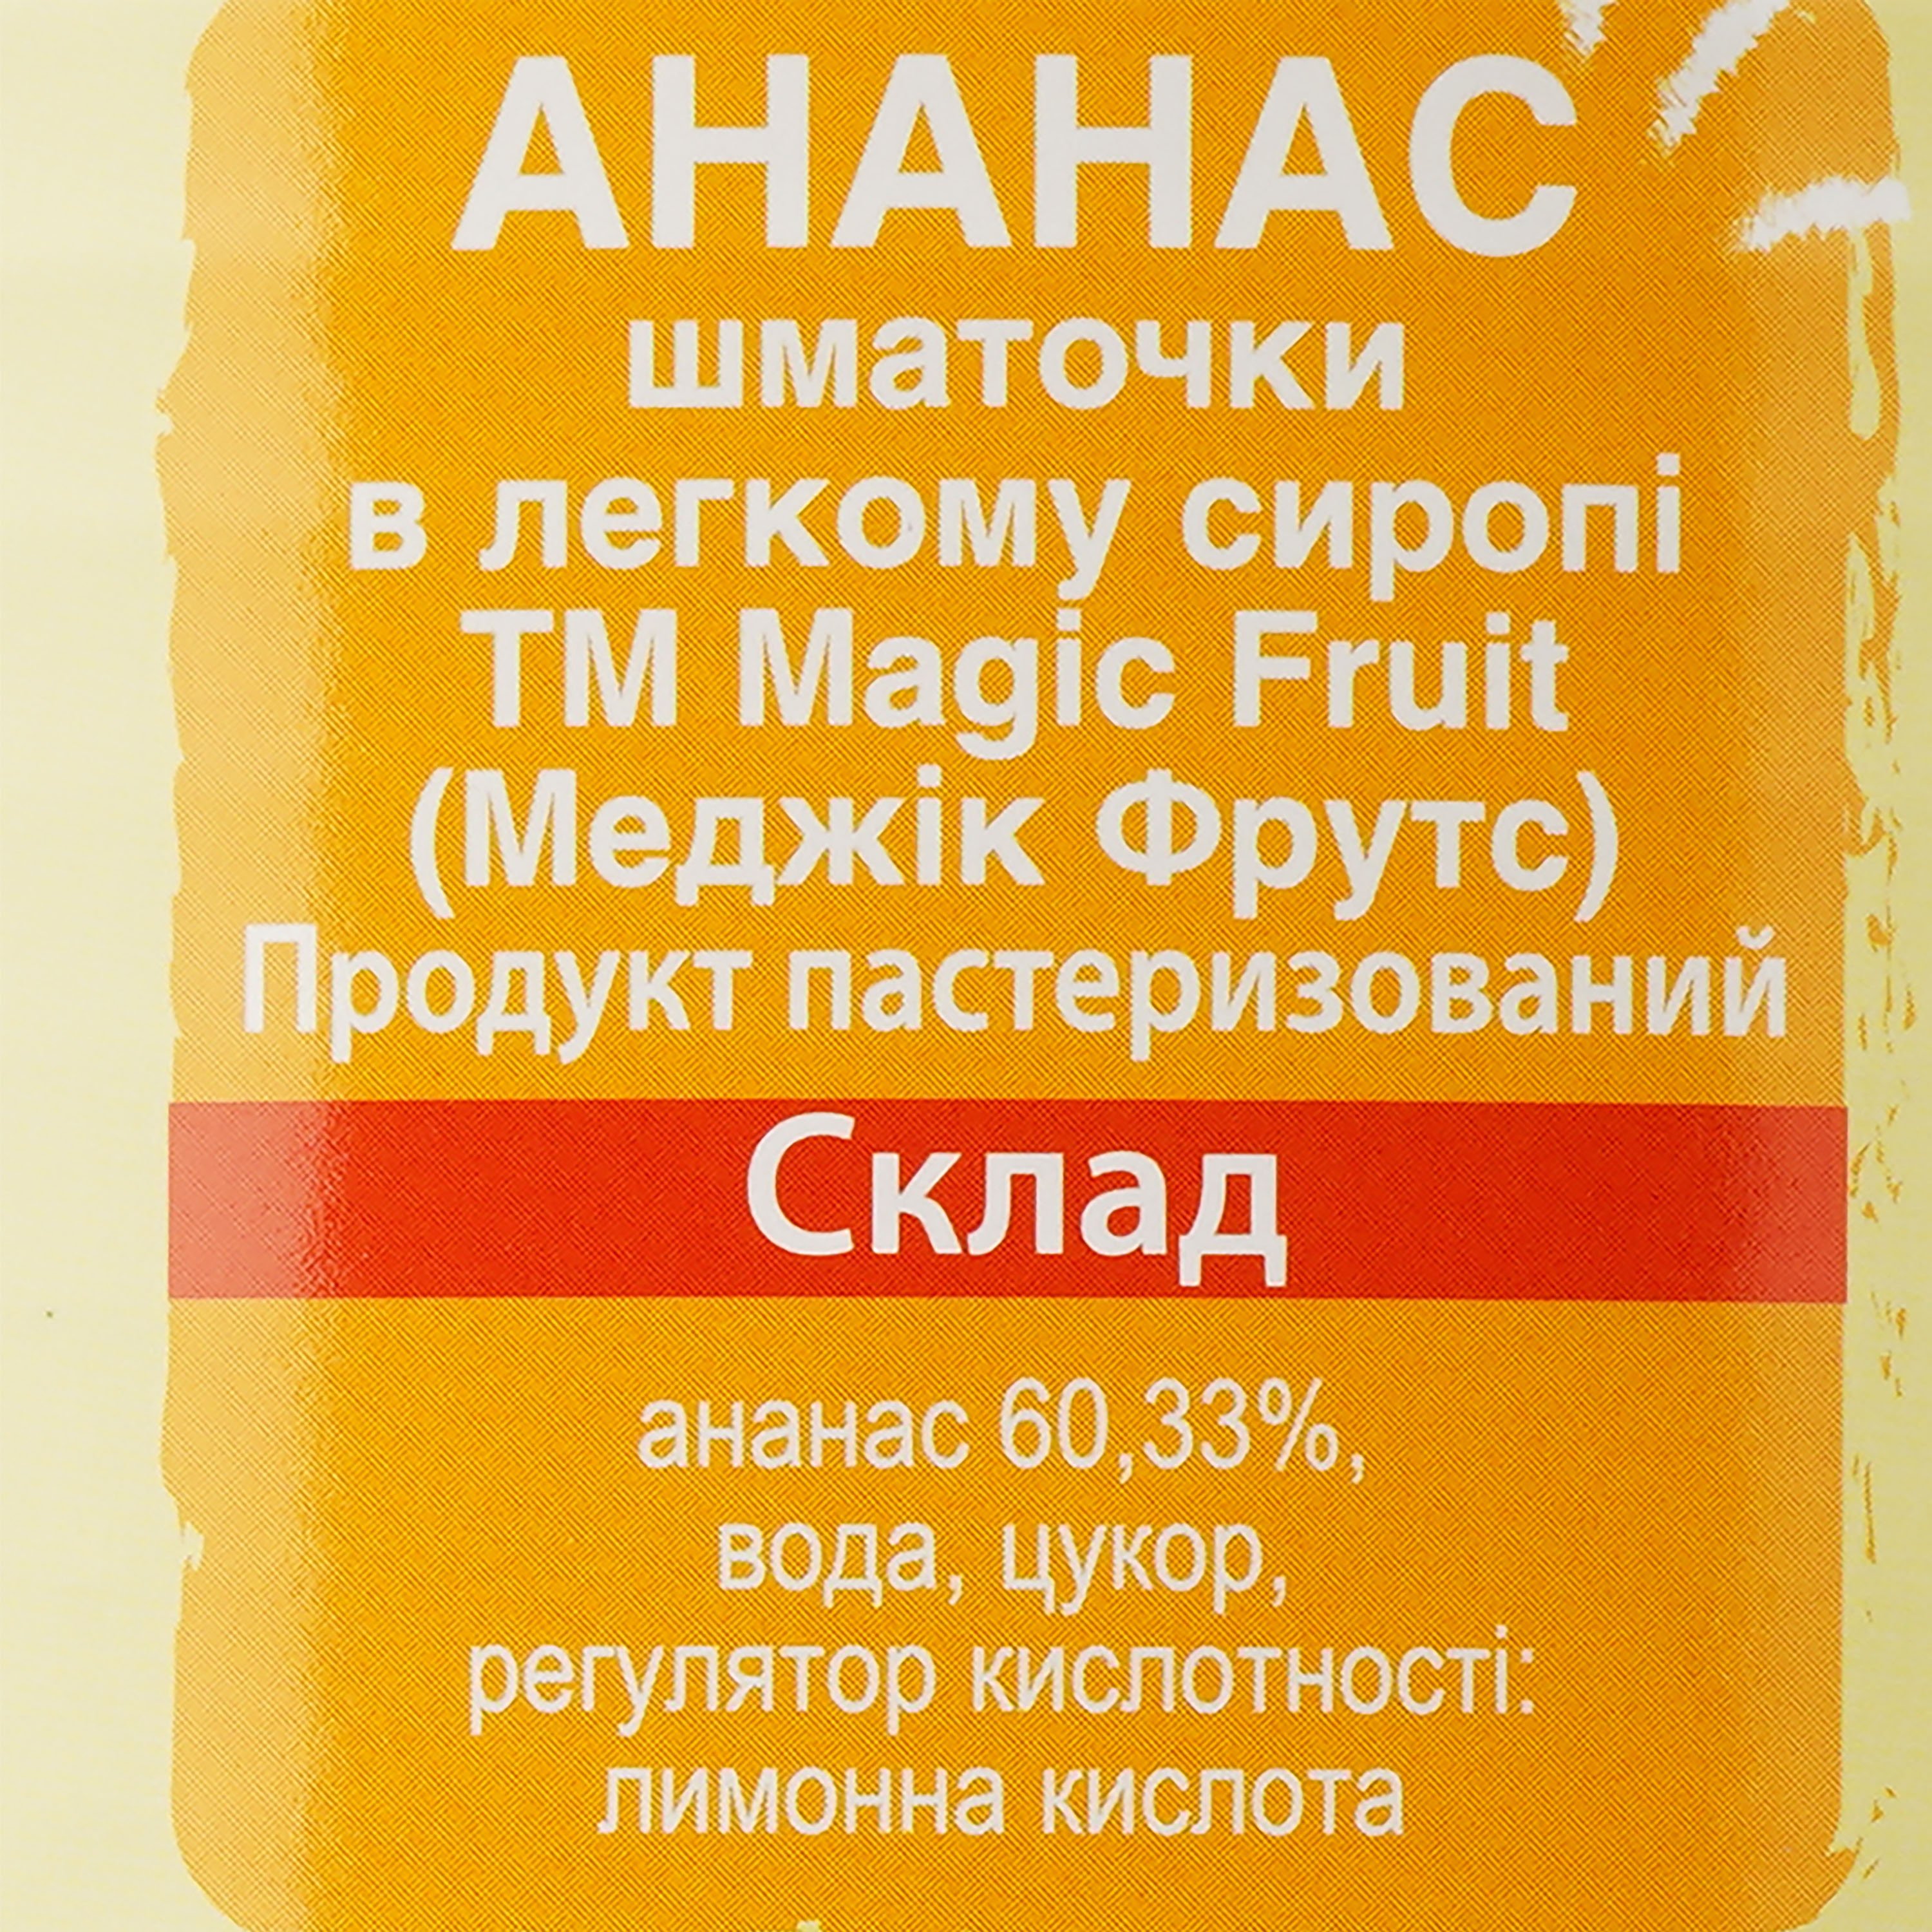 Ананас Magic Fruit шматочки в легкому сиропі, 3.035 кг (830447) - фото 3